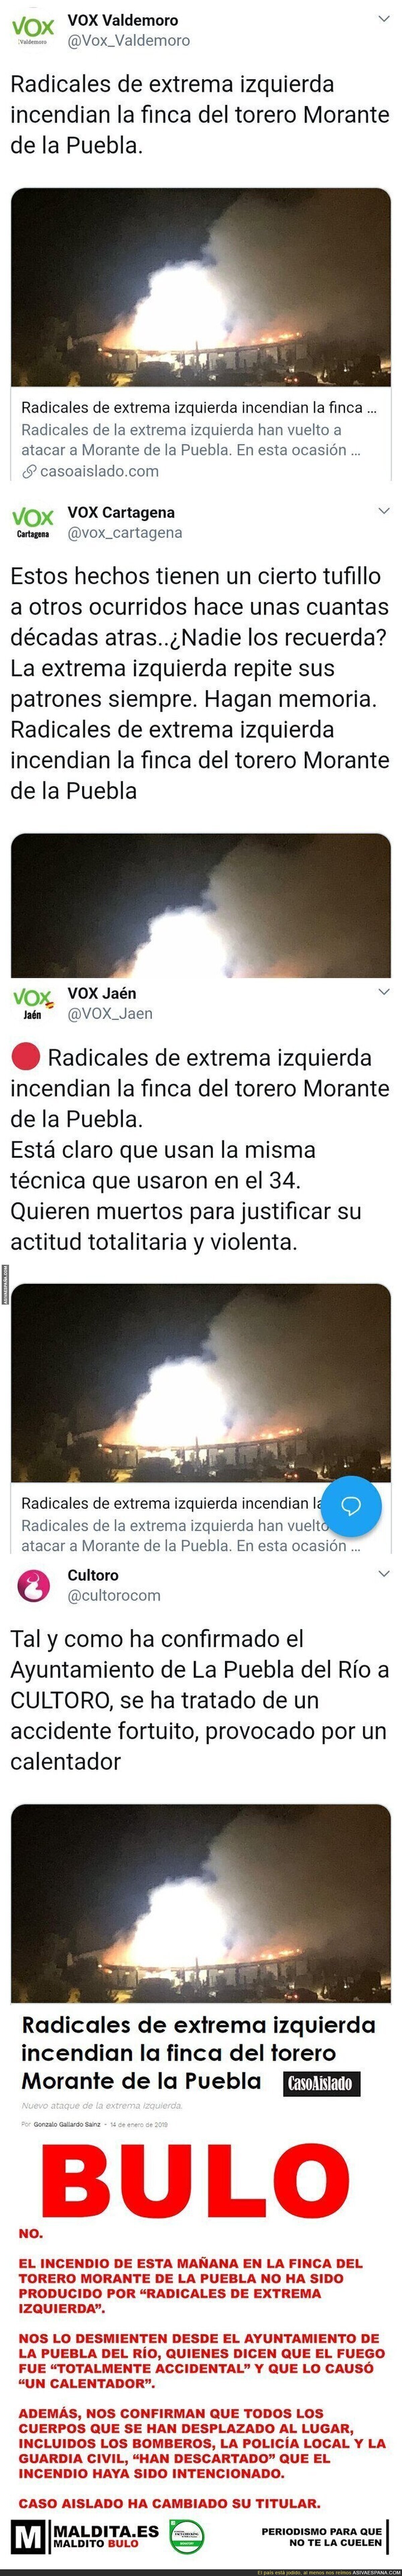 La web 'Caso Aislado' se inventa que la casa de Morante de la Puebla ha sido incendiada por gente de extrema izquierda